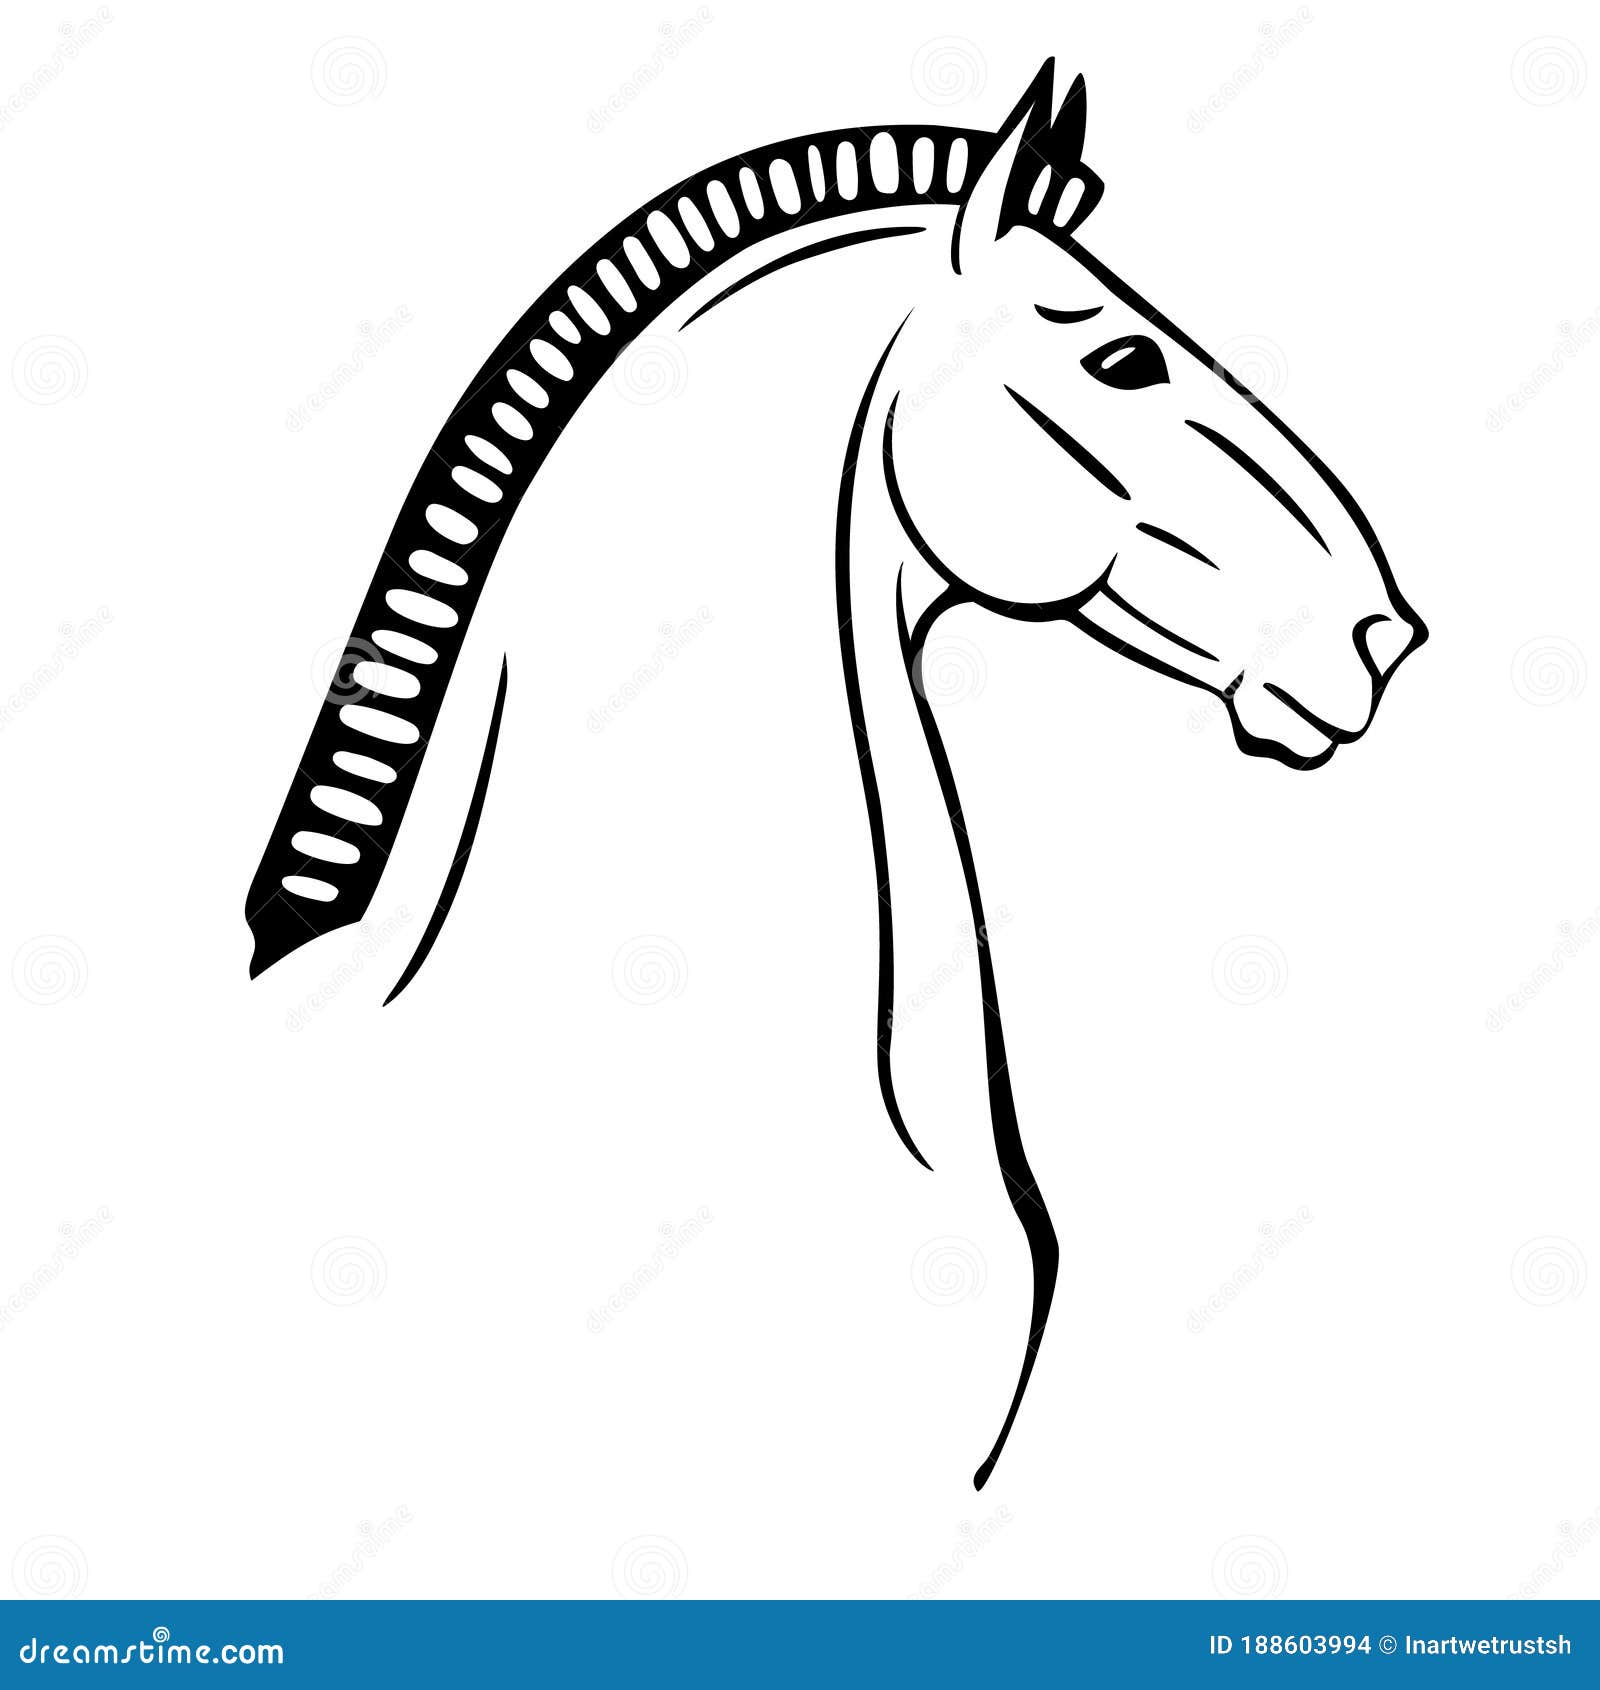 Como desenhar um cavalo: Cabeça - Introdução 01 